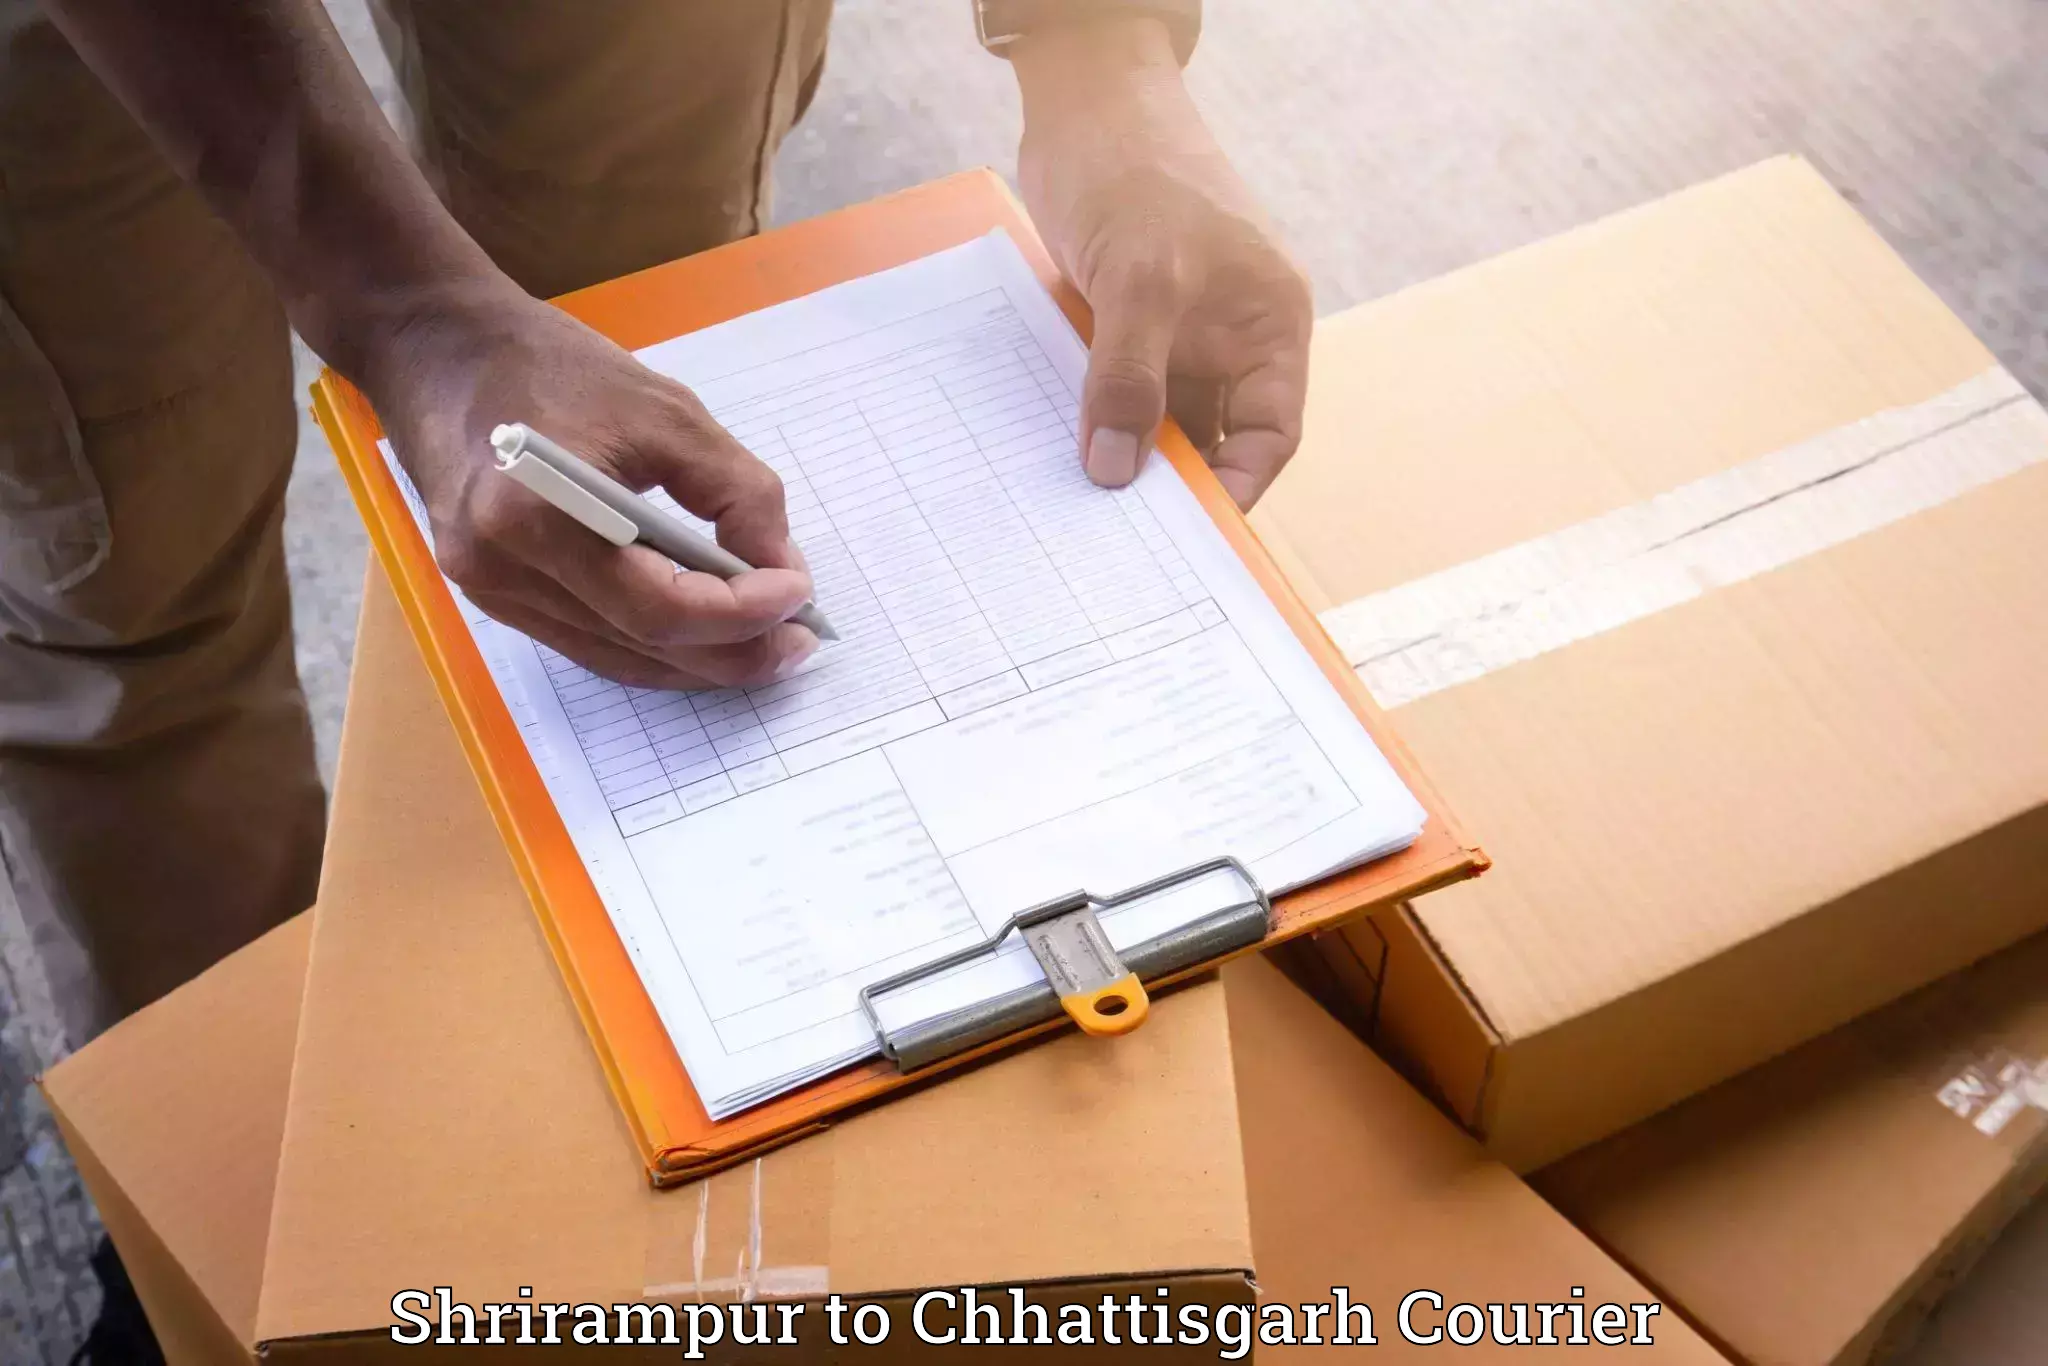 Stress-free furniture moving Shrirampur to Mahasamund